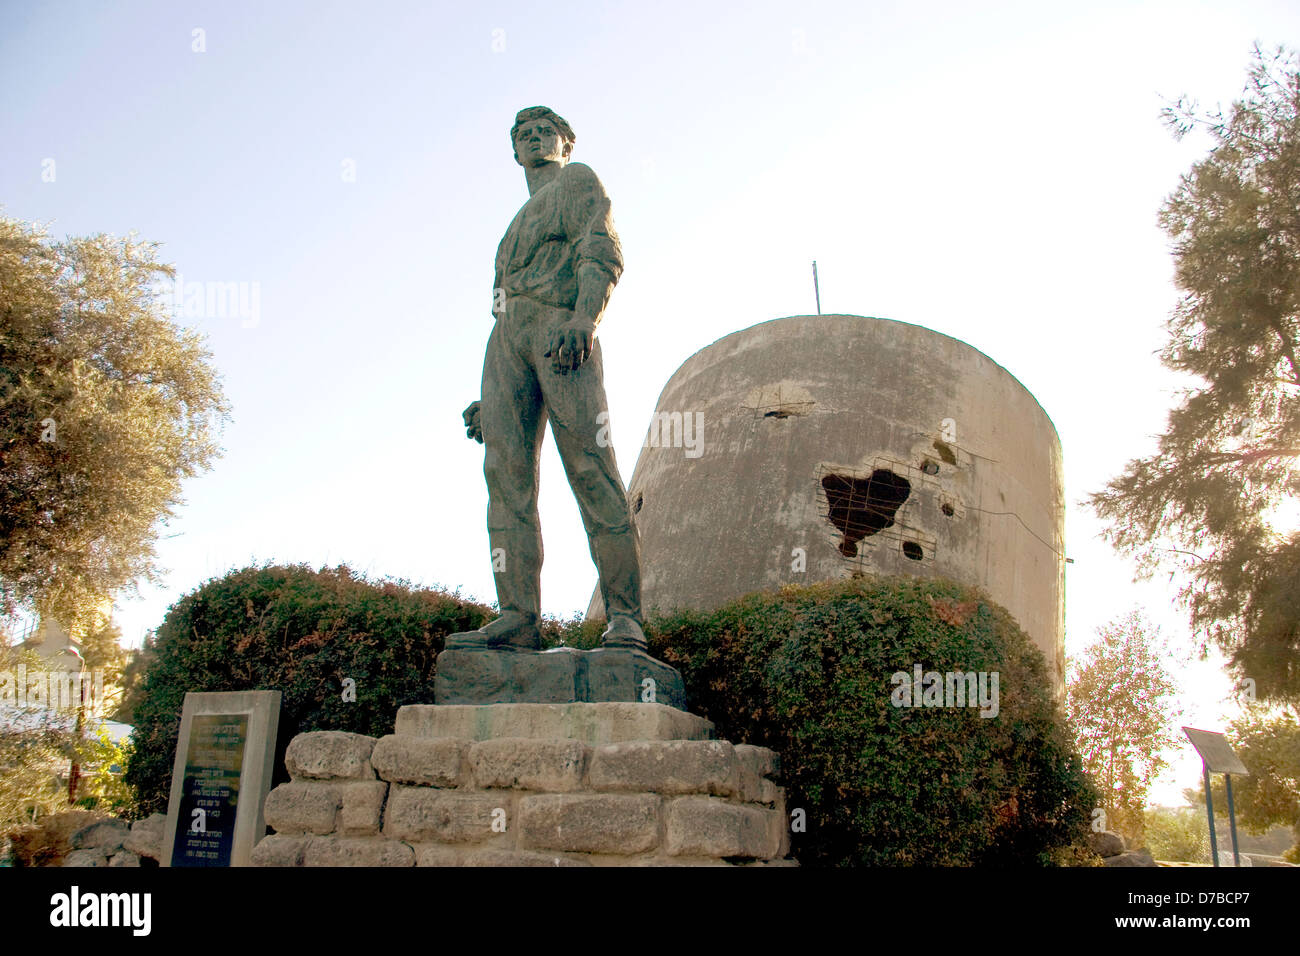 Memorial to Mordechai Anielewicz next to the destroyed Water tower at kibbutz Yad Mordechai Stock Photo